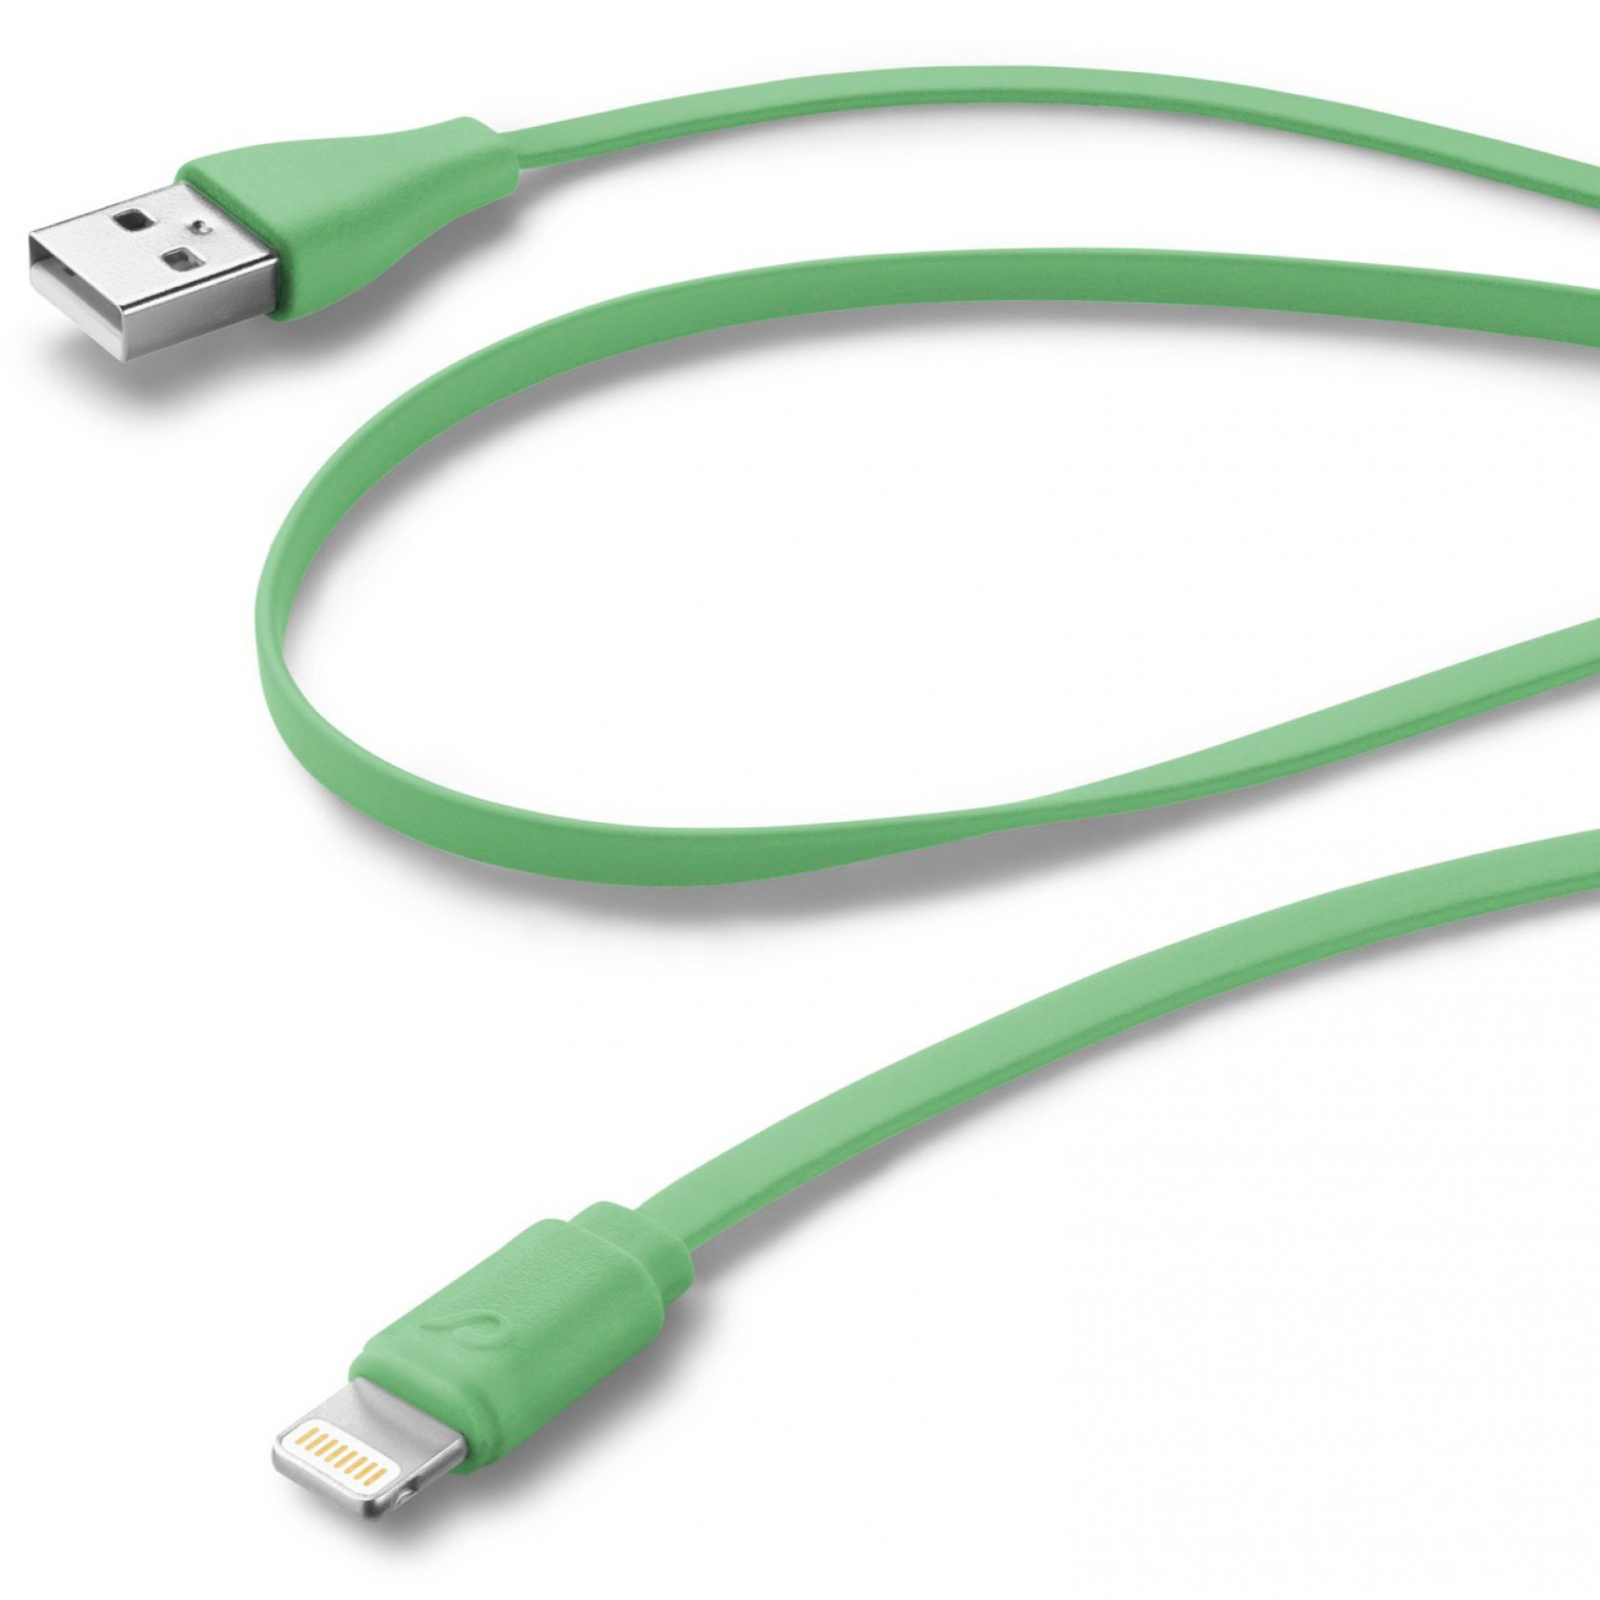 Дата кабель USB 2.0 AM to Lightning 1.0m pink Cellularline (USBDATACFLMFIIPH5P) изображение 2